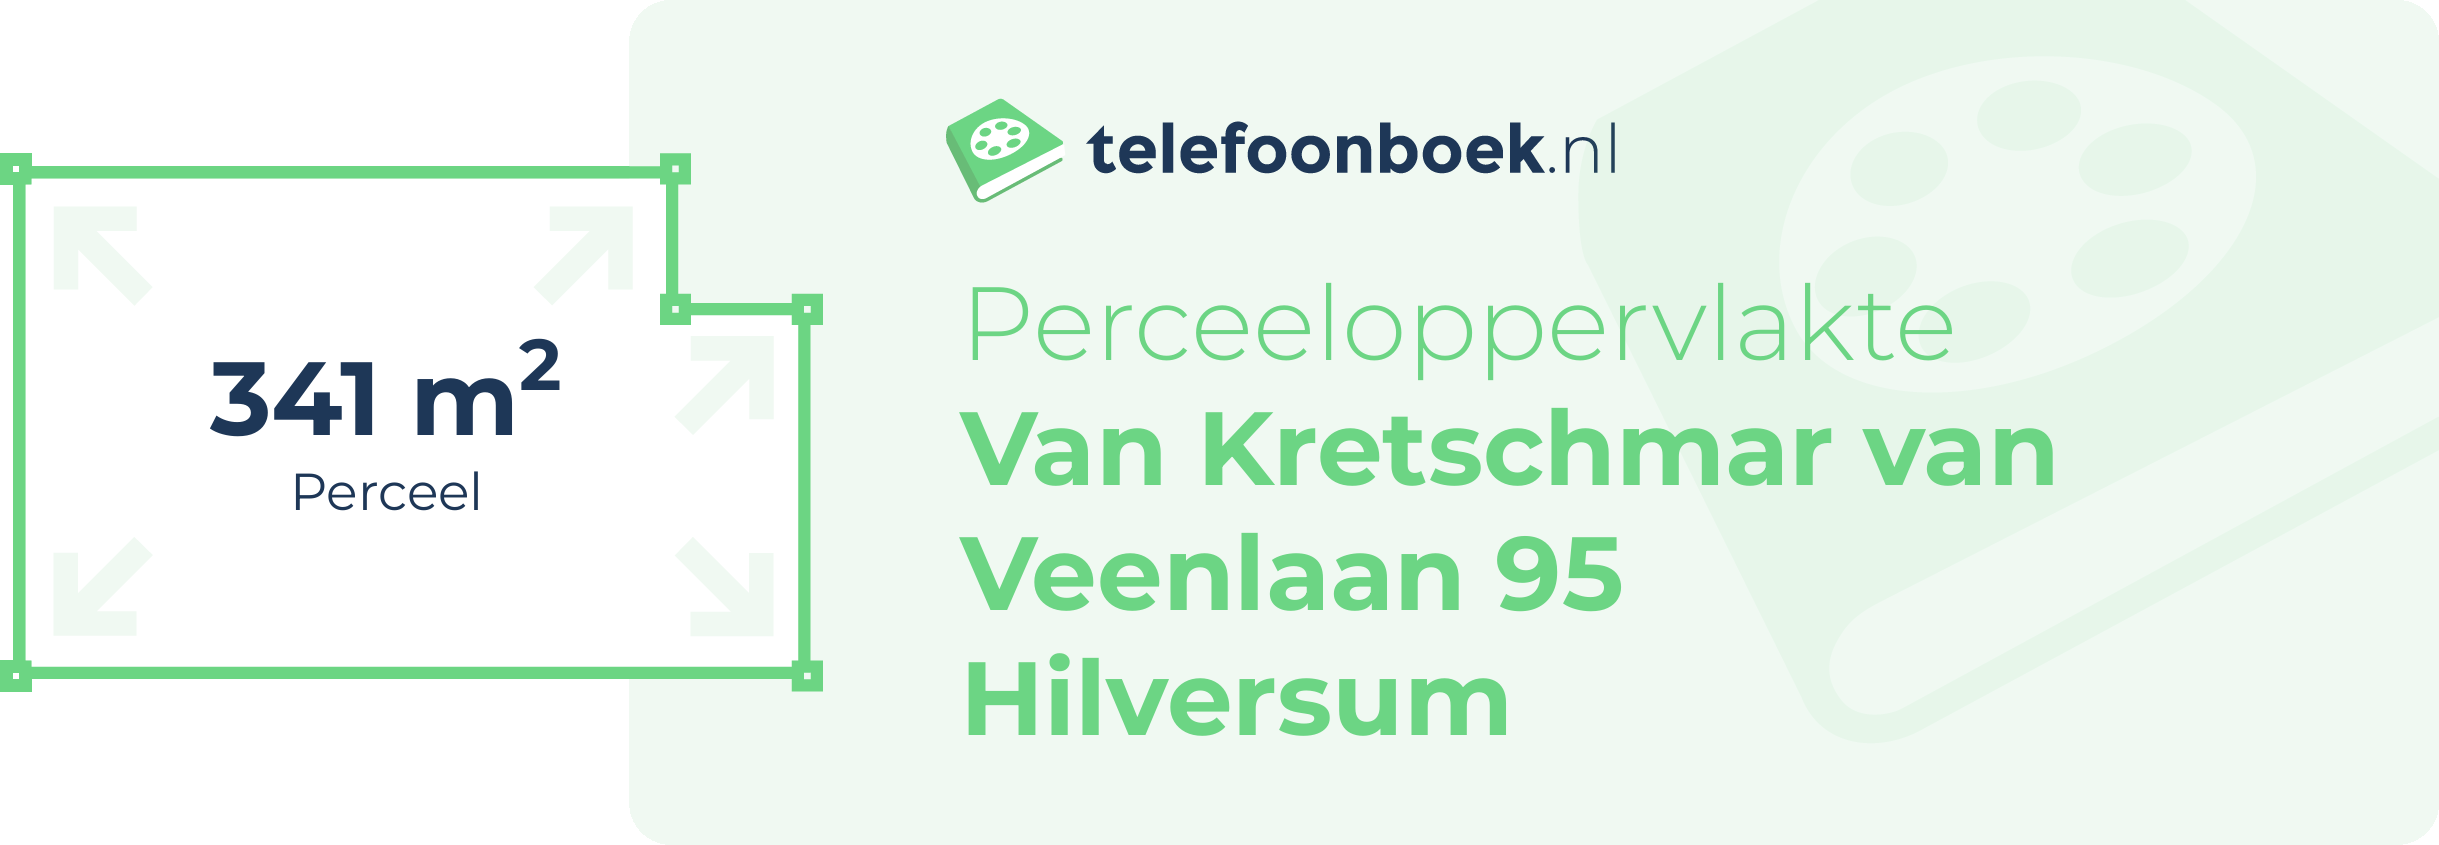 Perceeloppervlakte Van Kretschmar Van Veenlaan 95 Hilversum